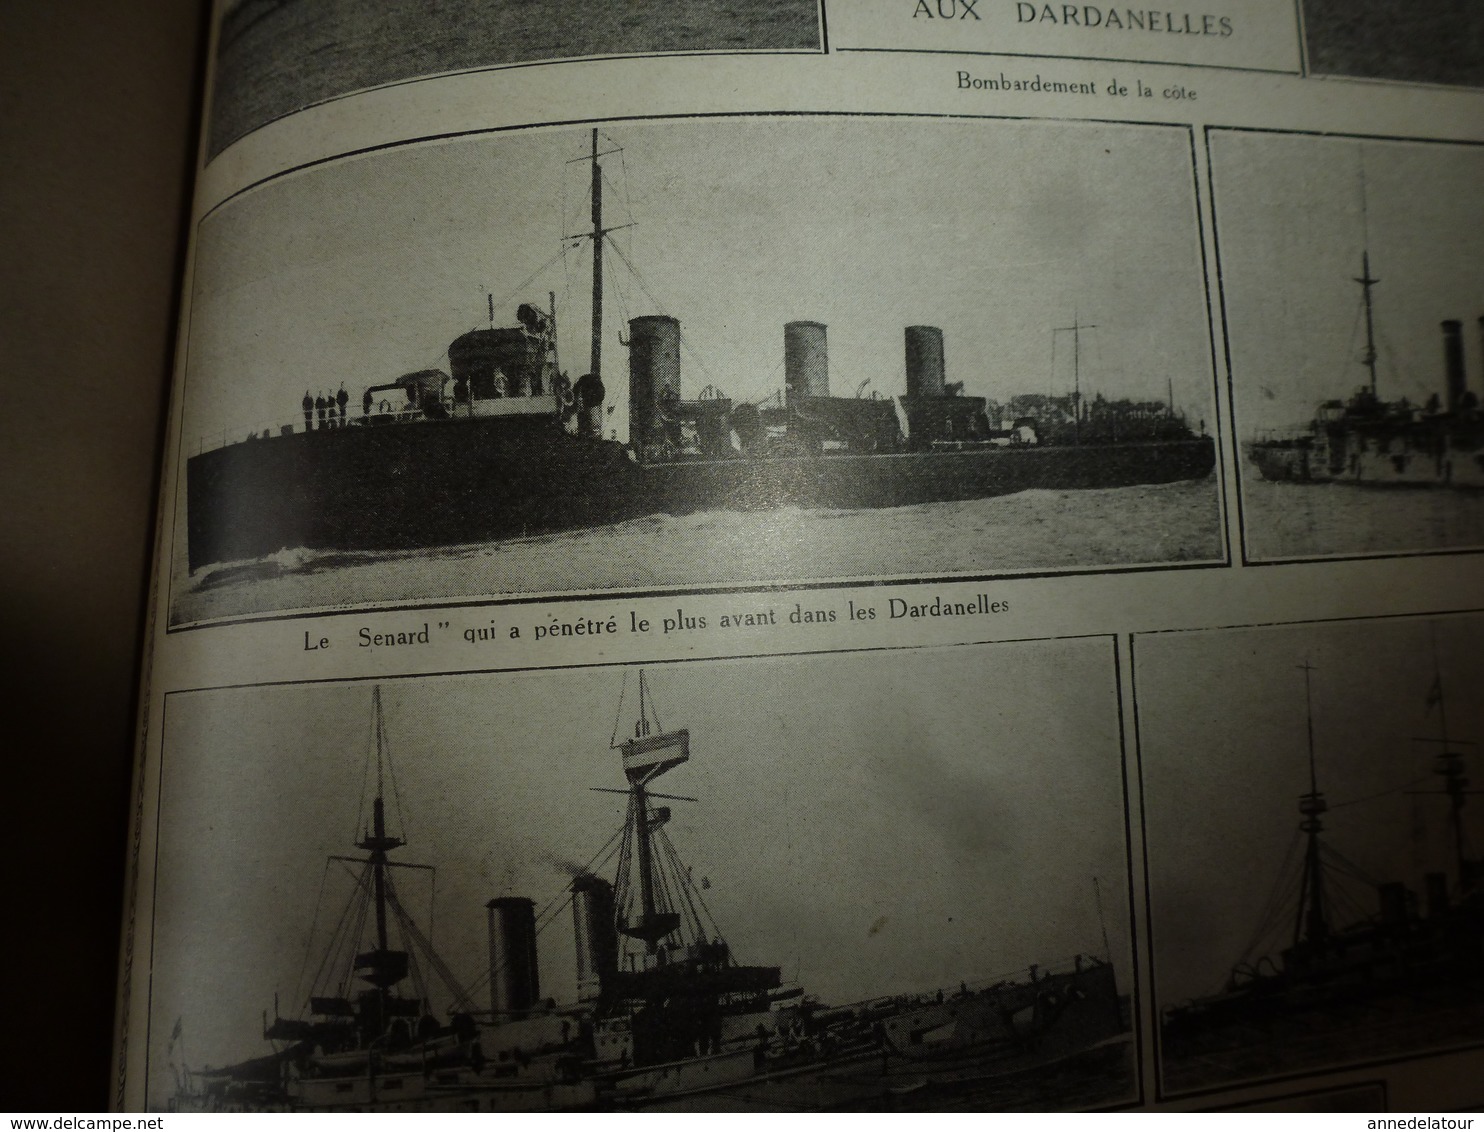 1914-18 LA GUERRE DOCUMENTÉE:Gallipoli;Canada,Australie et GB dans Dardanelles;Les navires;Charge à la baïonnette;etc